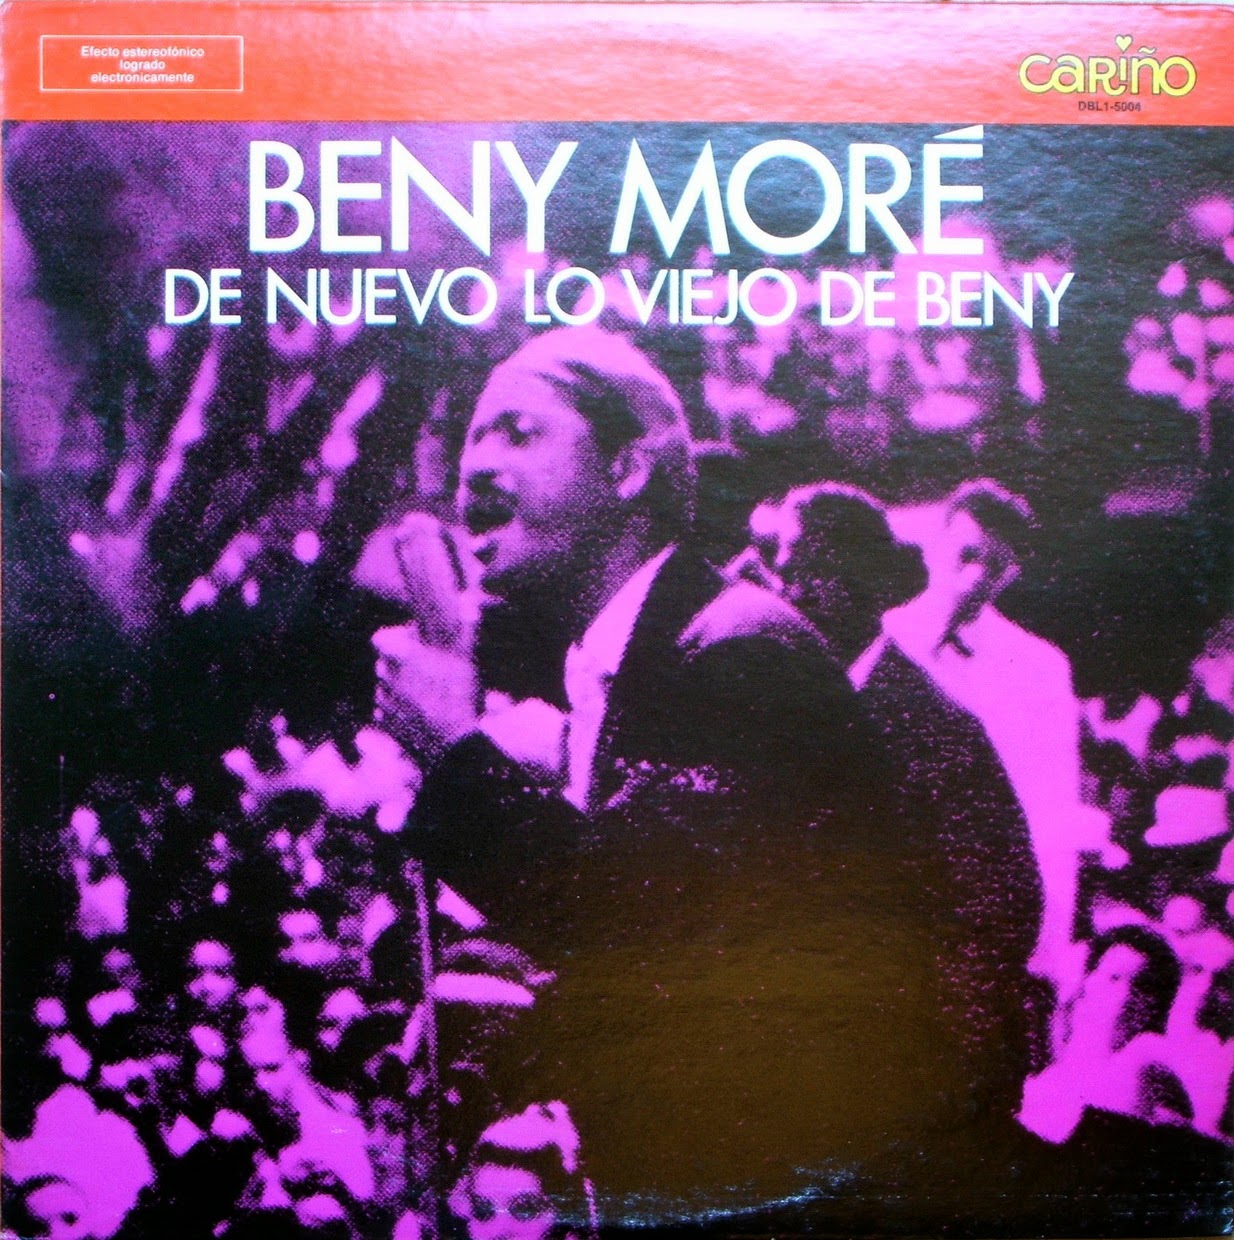  Beny Moré - de nuevo lo viejo de beny (1971) Dbl1-5004